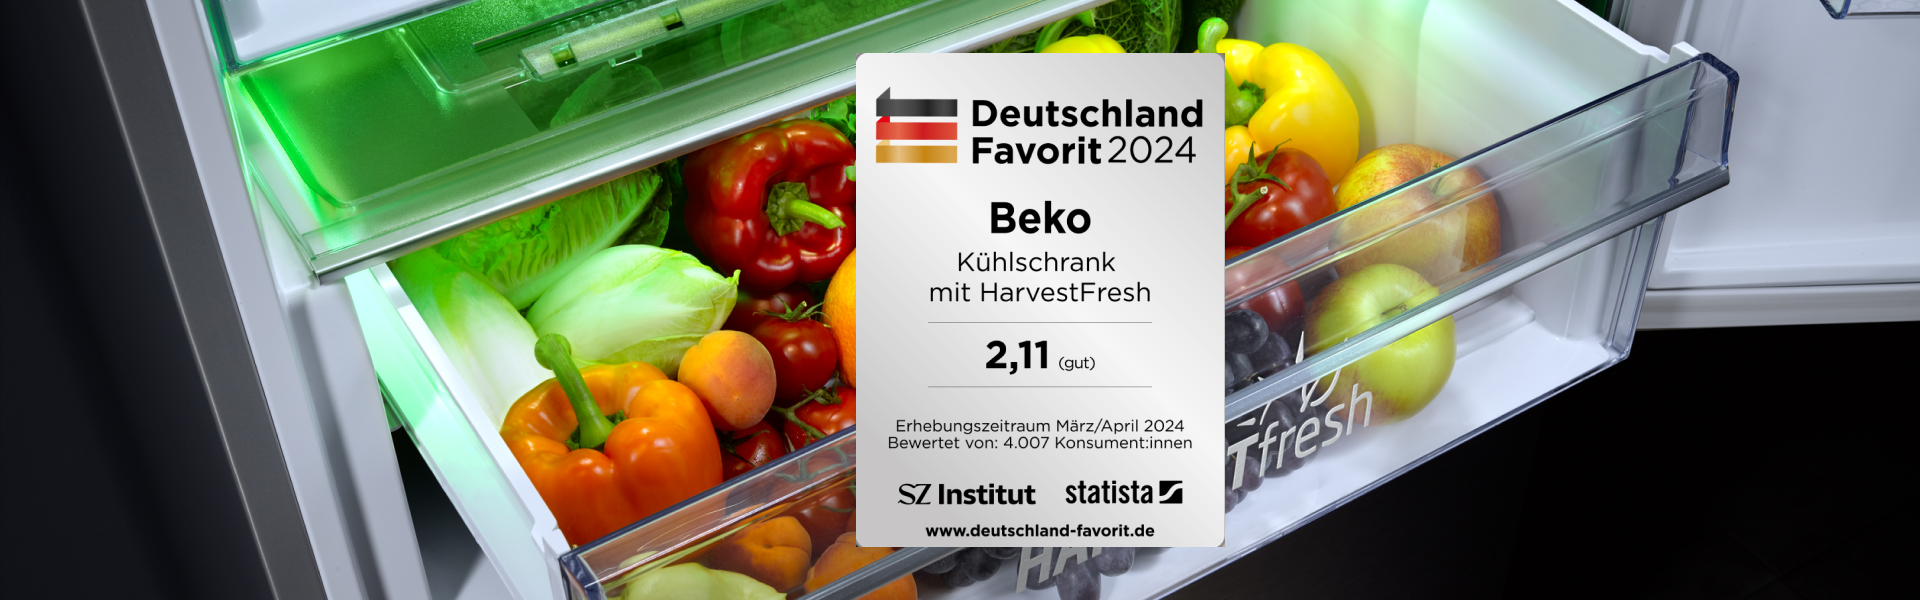 HarvestFresh Kühlschränke sind Deutschland Favorit 2024 